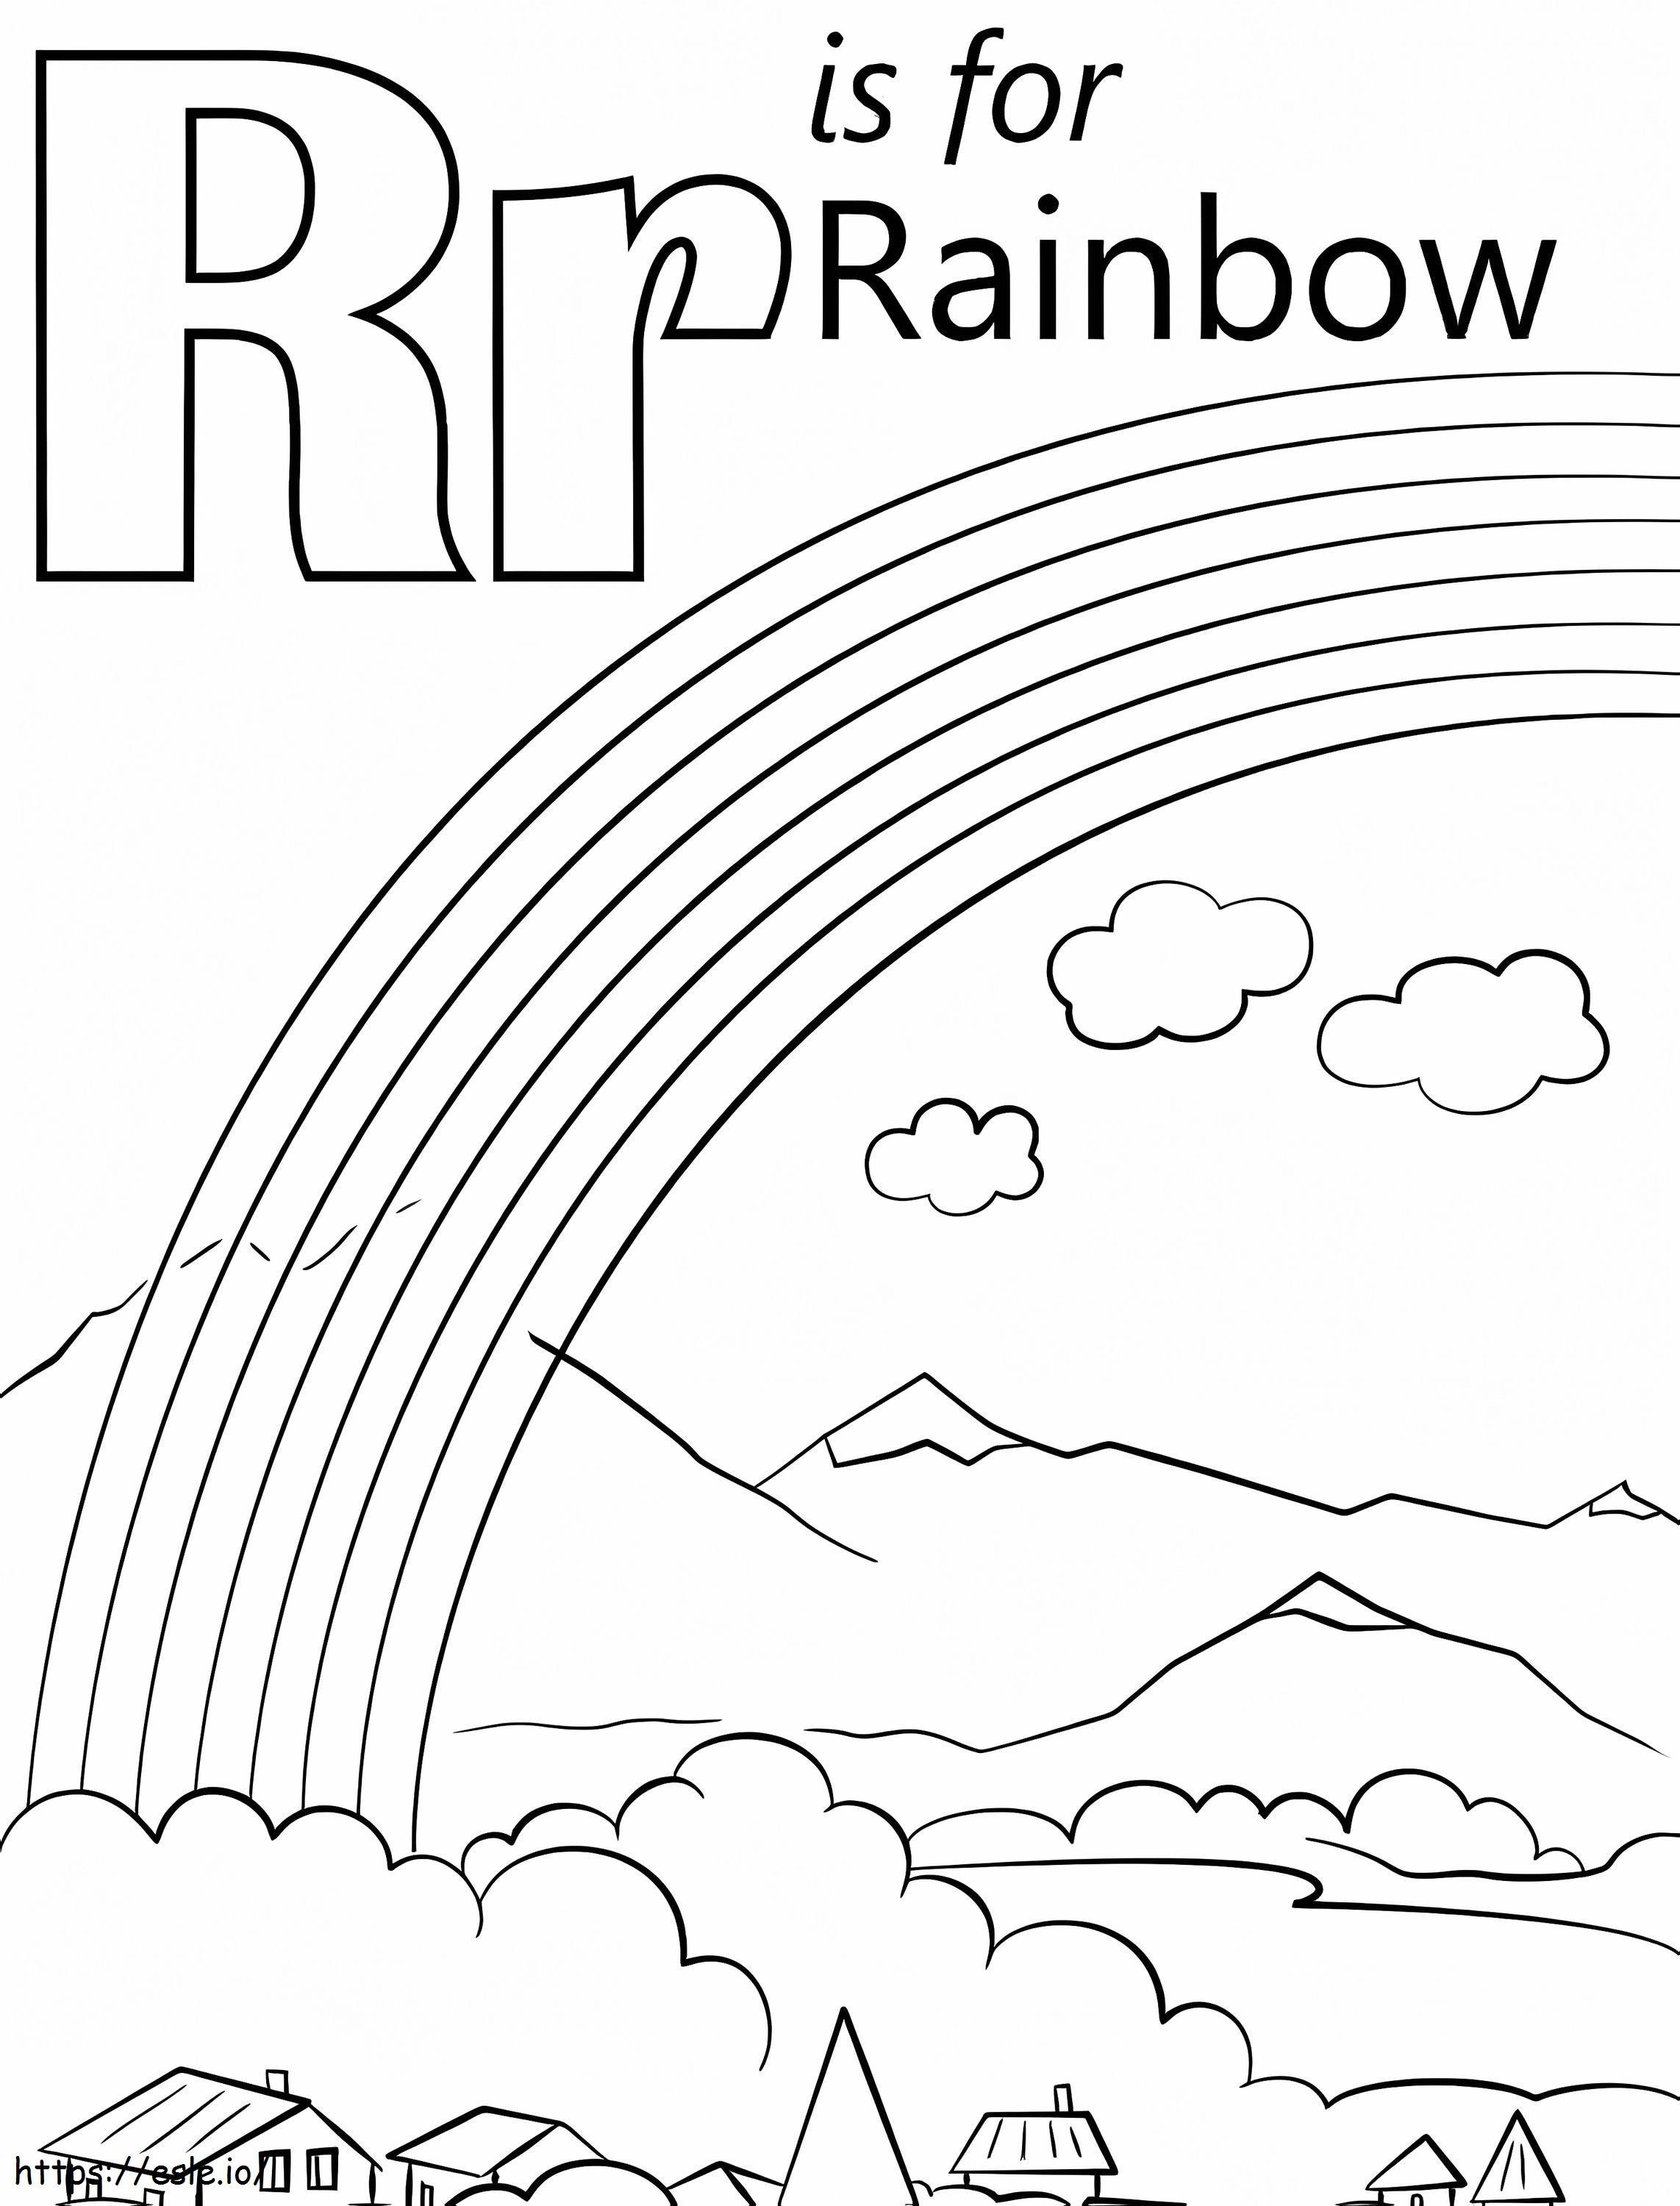 Regenbogenbuchstabe R ausmalbilder